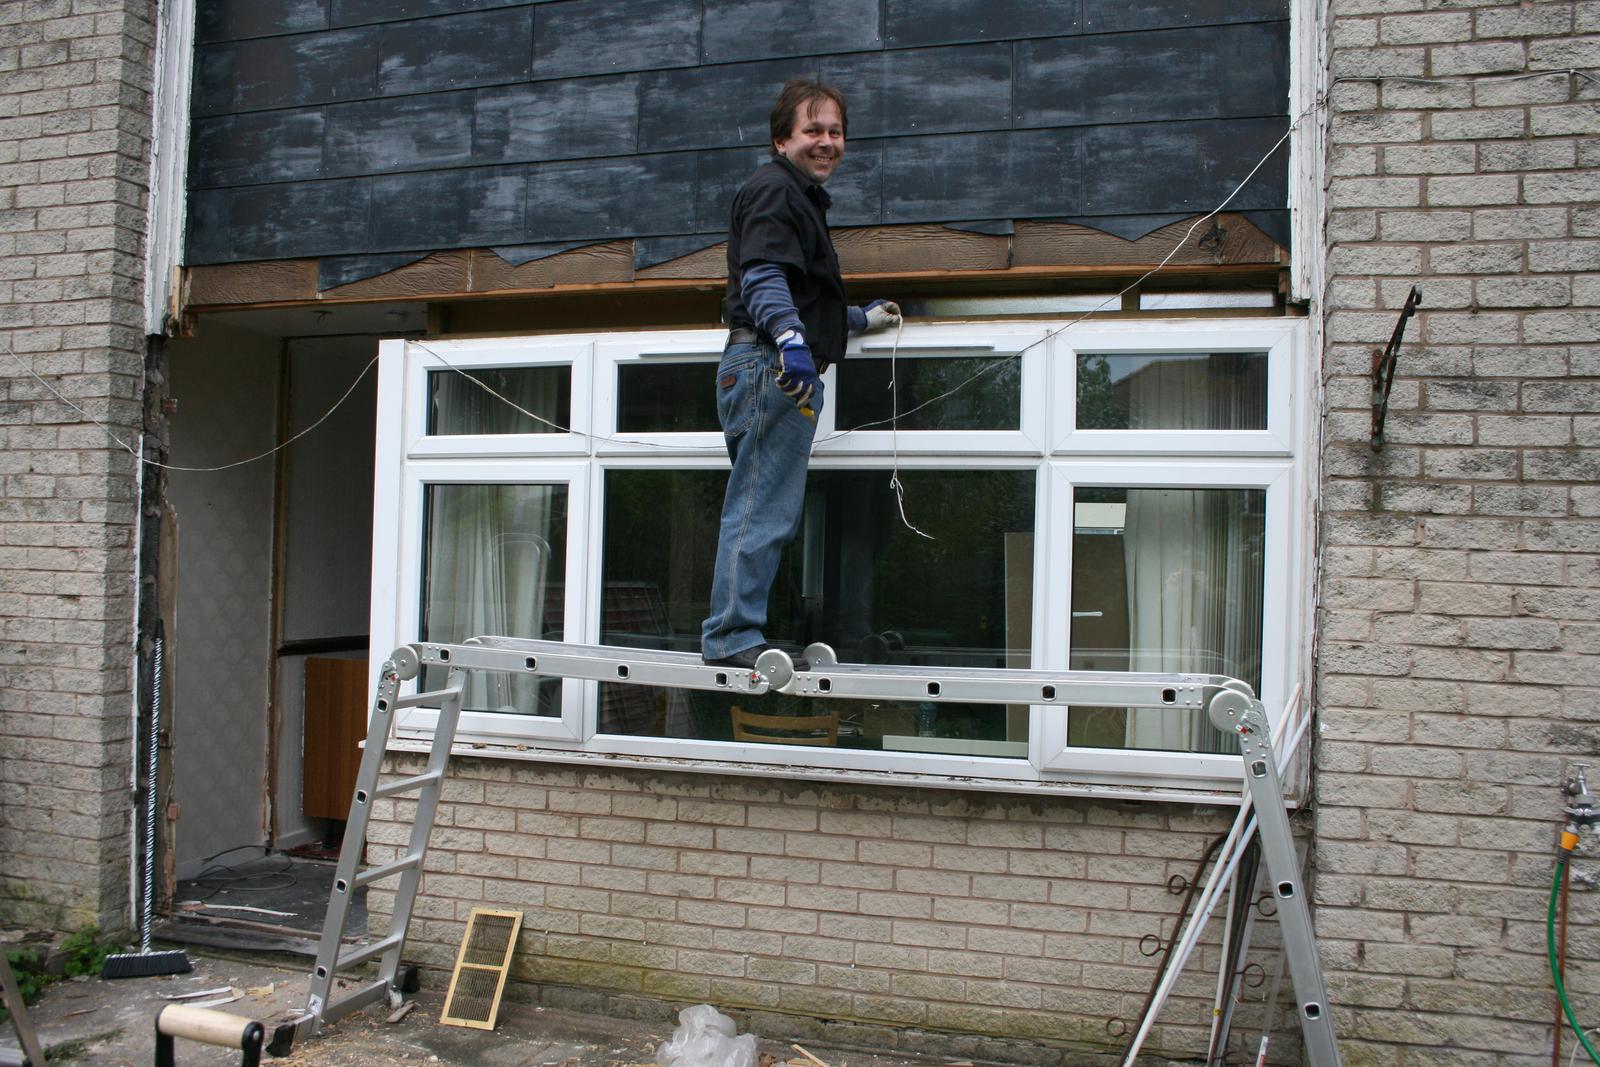 Prestavba domu a zahrady - duben 2014  snad nefoukne vitr a okno nevypadne ven nebo dovnitr! Usta se smeji, ale k humoru nebyl duvod.